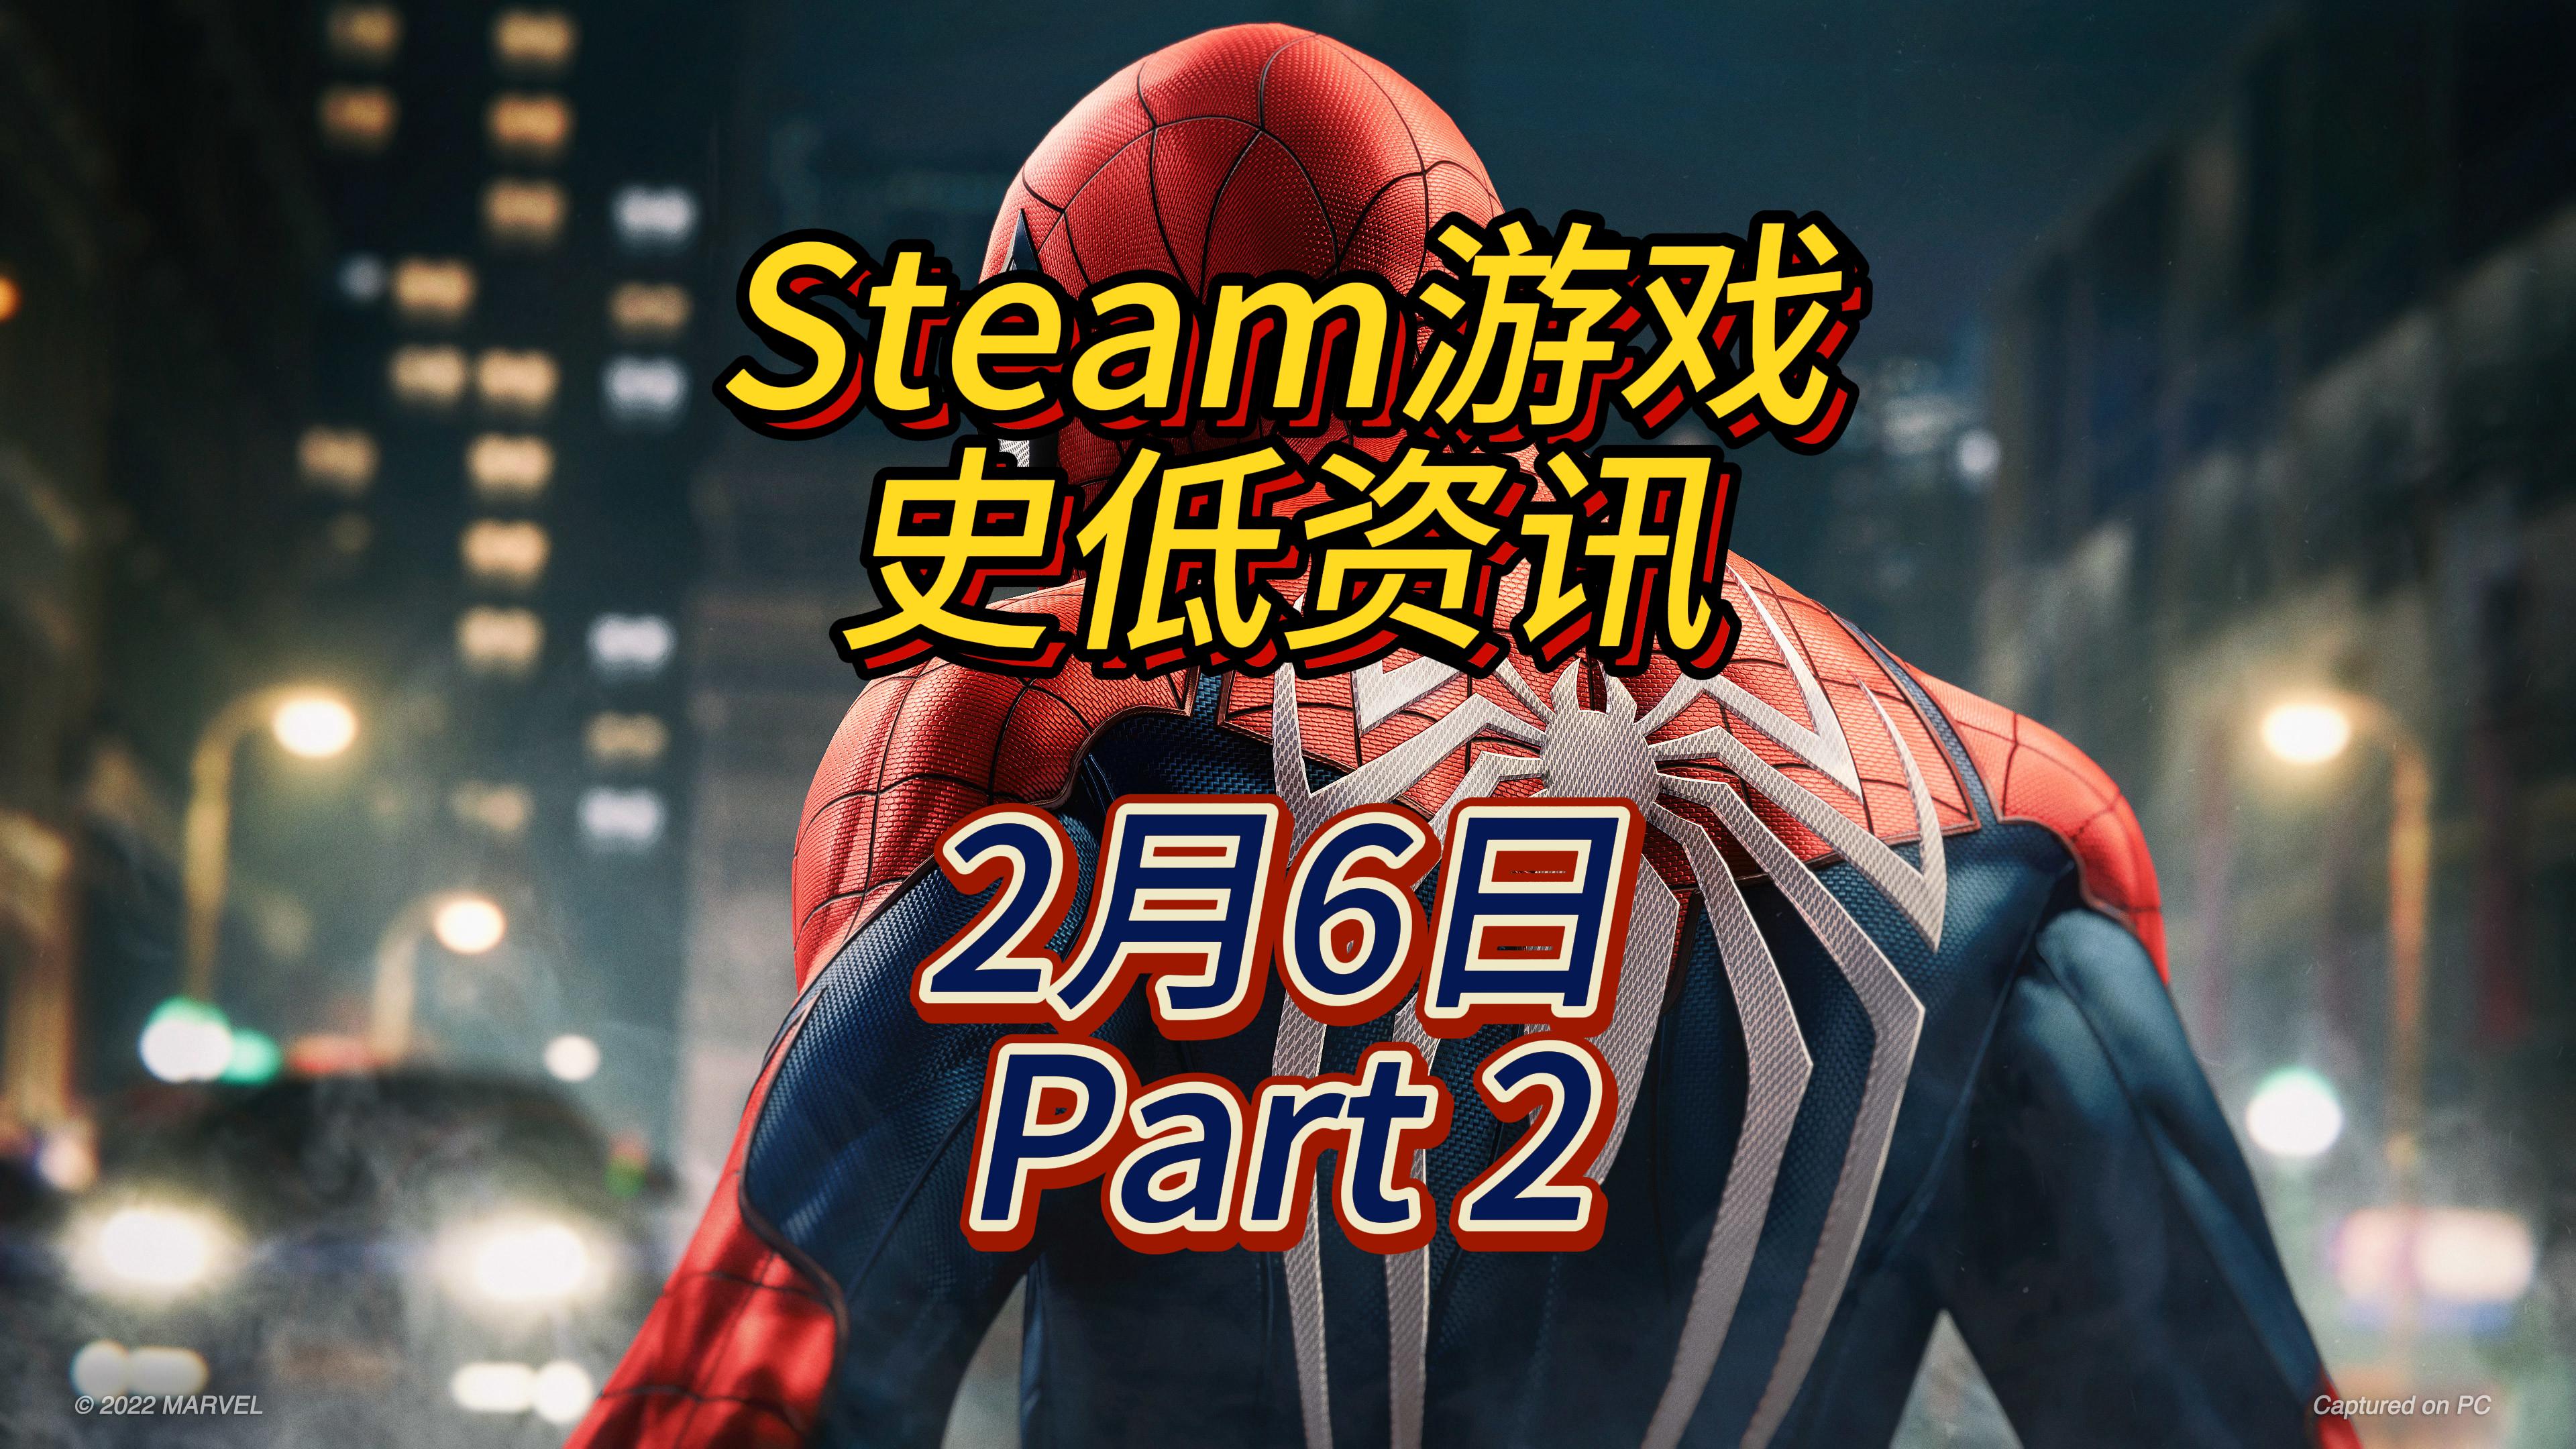 能力越大责任越大的蜘蛛侠平史低，2 月 6 日 Steam 史低游戏 Part 2